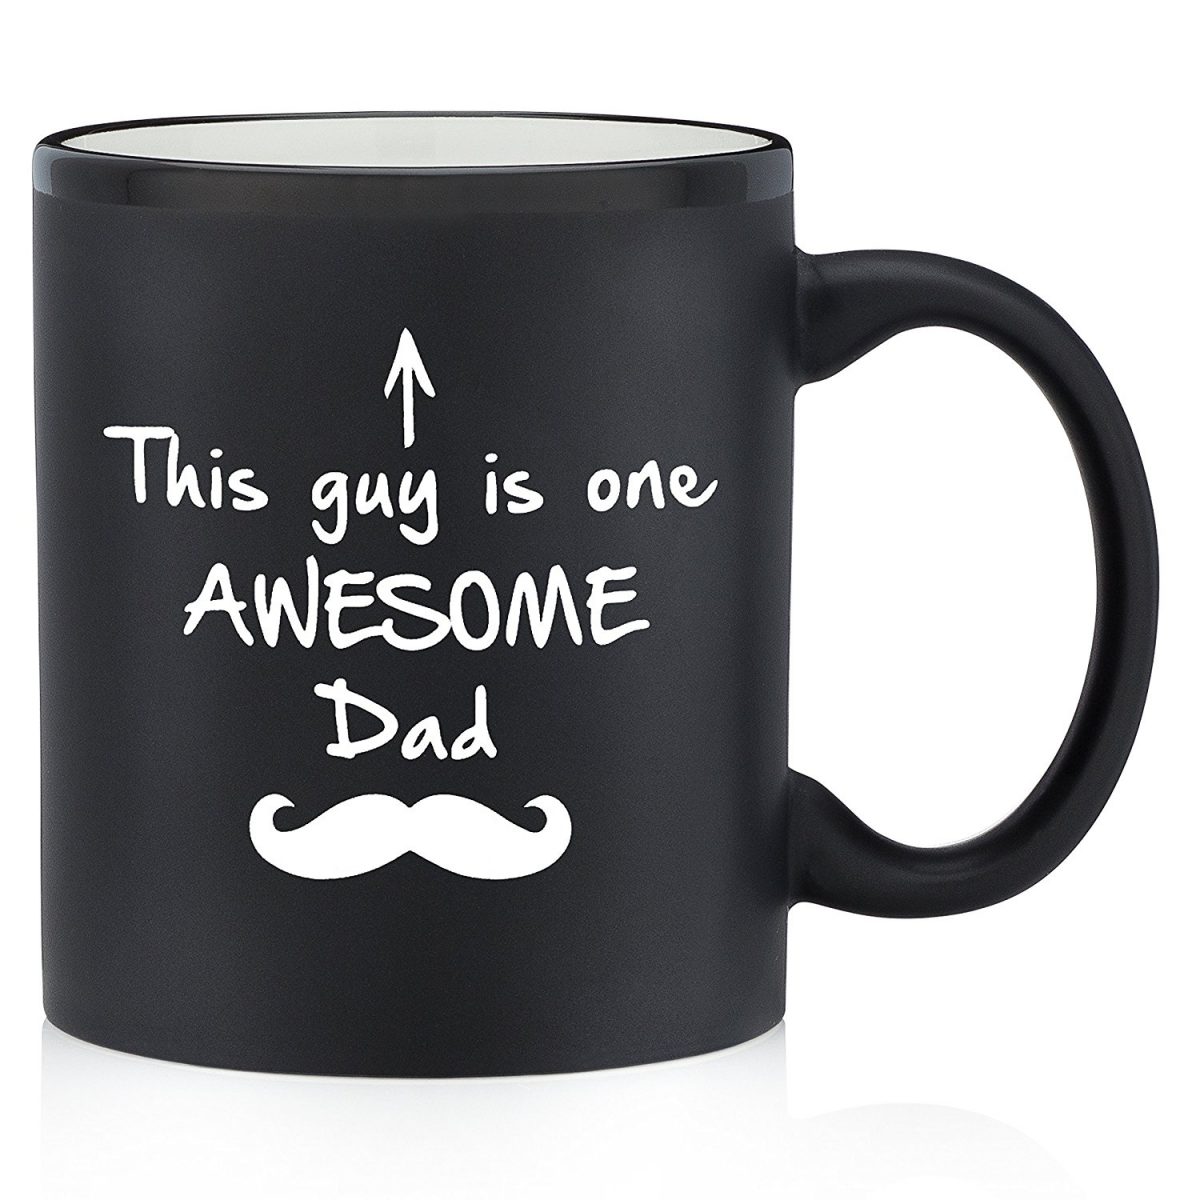 Awesome dad mug